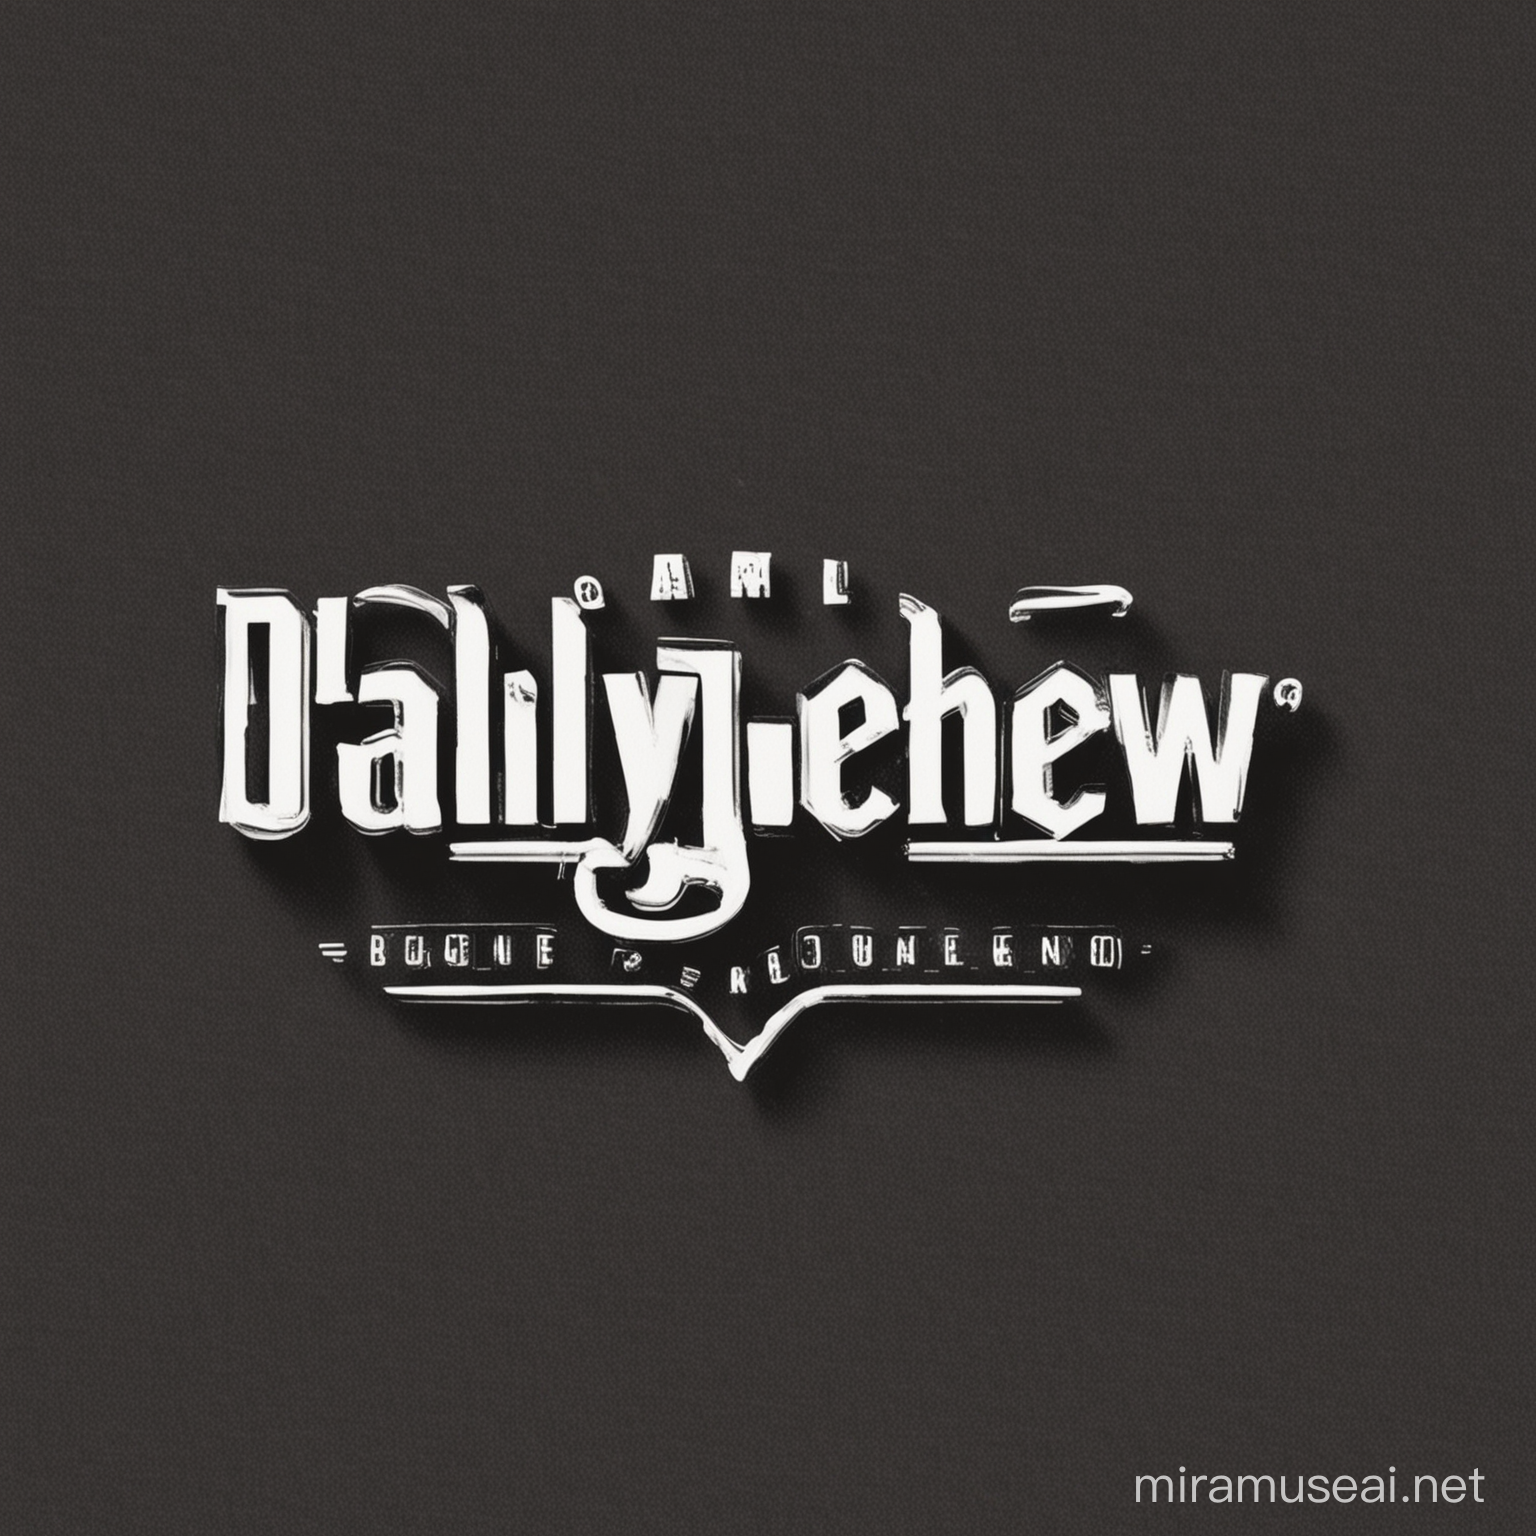 @DailyBugleNew logo 
